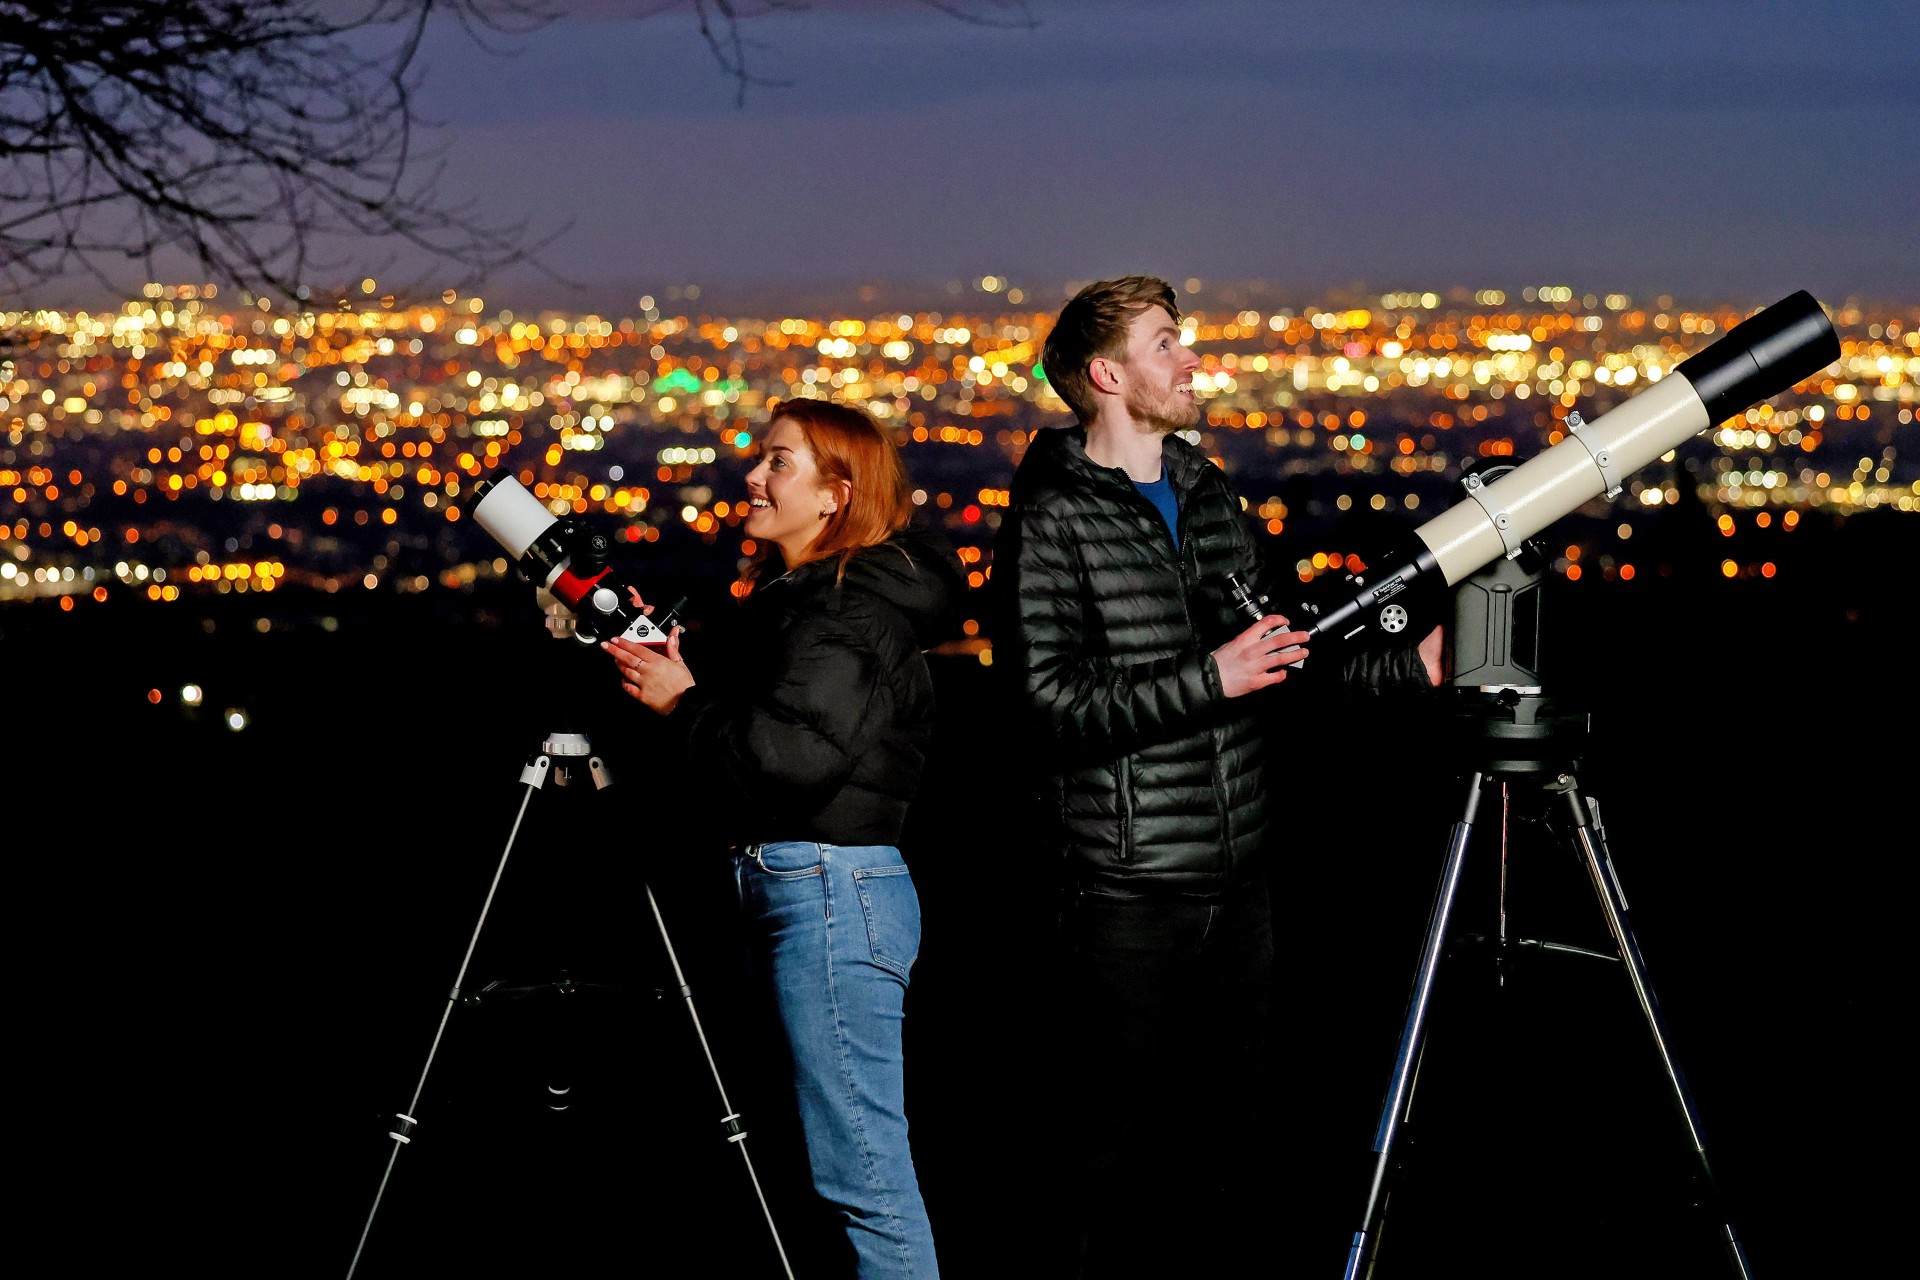 Dernière chance de briller pour les astrophotographes en herbe de Dublin